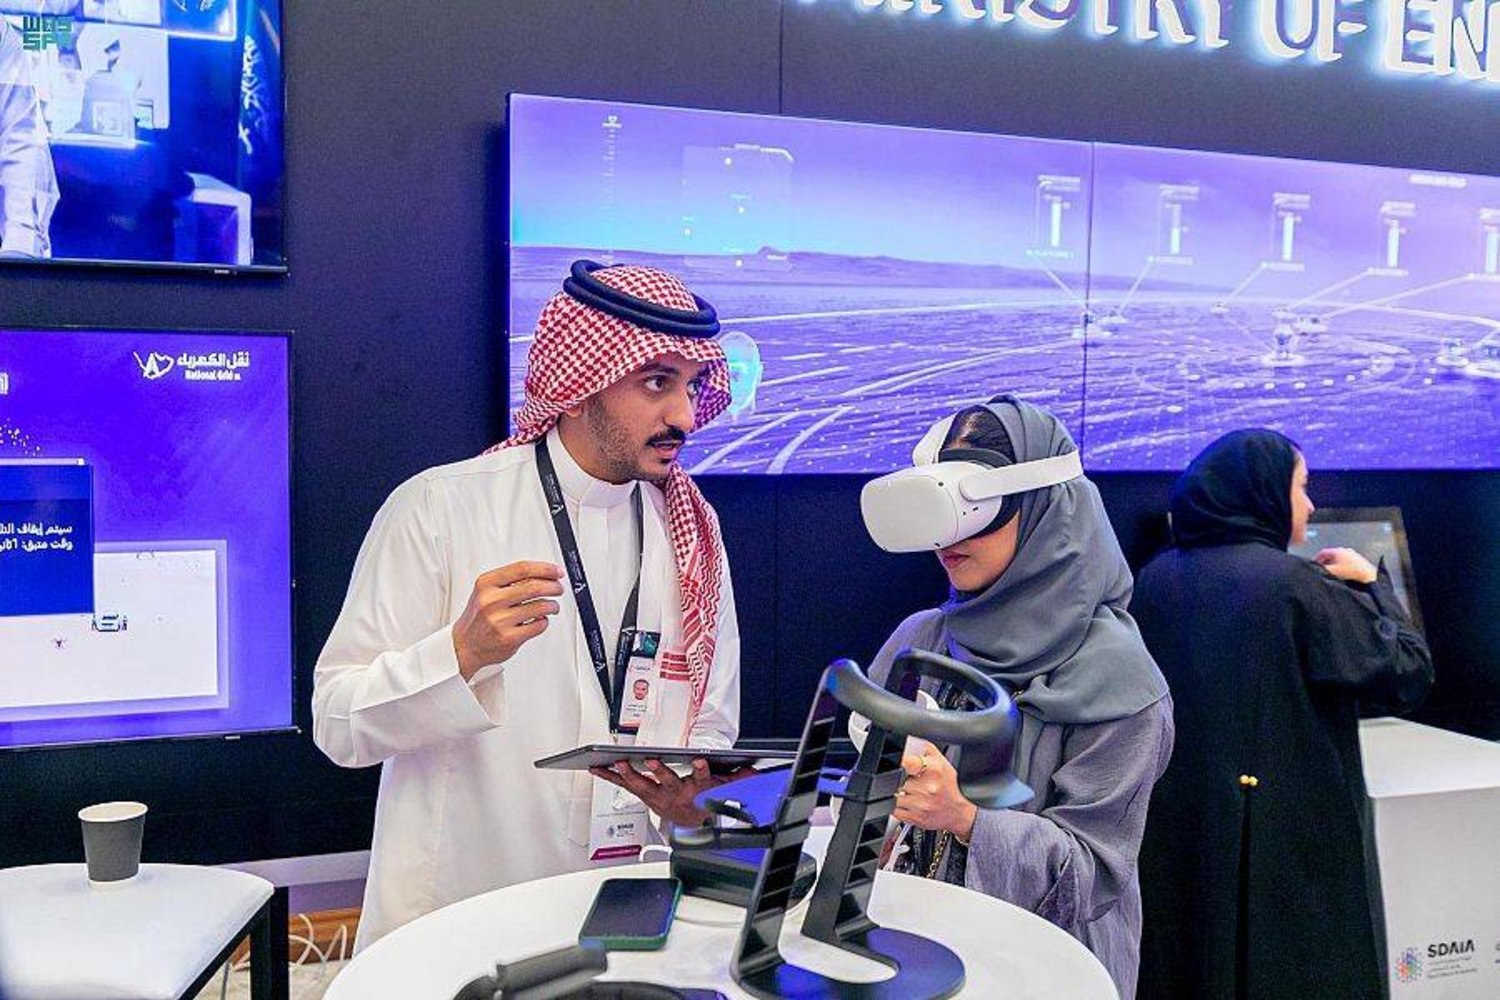 السعودية تقر إنشاء مركز للذكاء الاصطناعي مقره الرياض - المركز الدولي لأبحاث الذكاء الاصطناعي